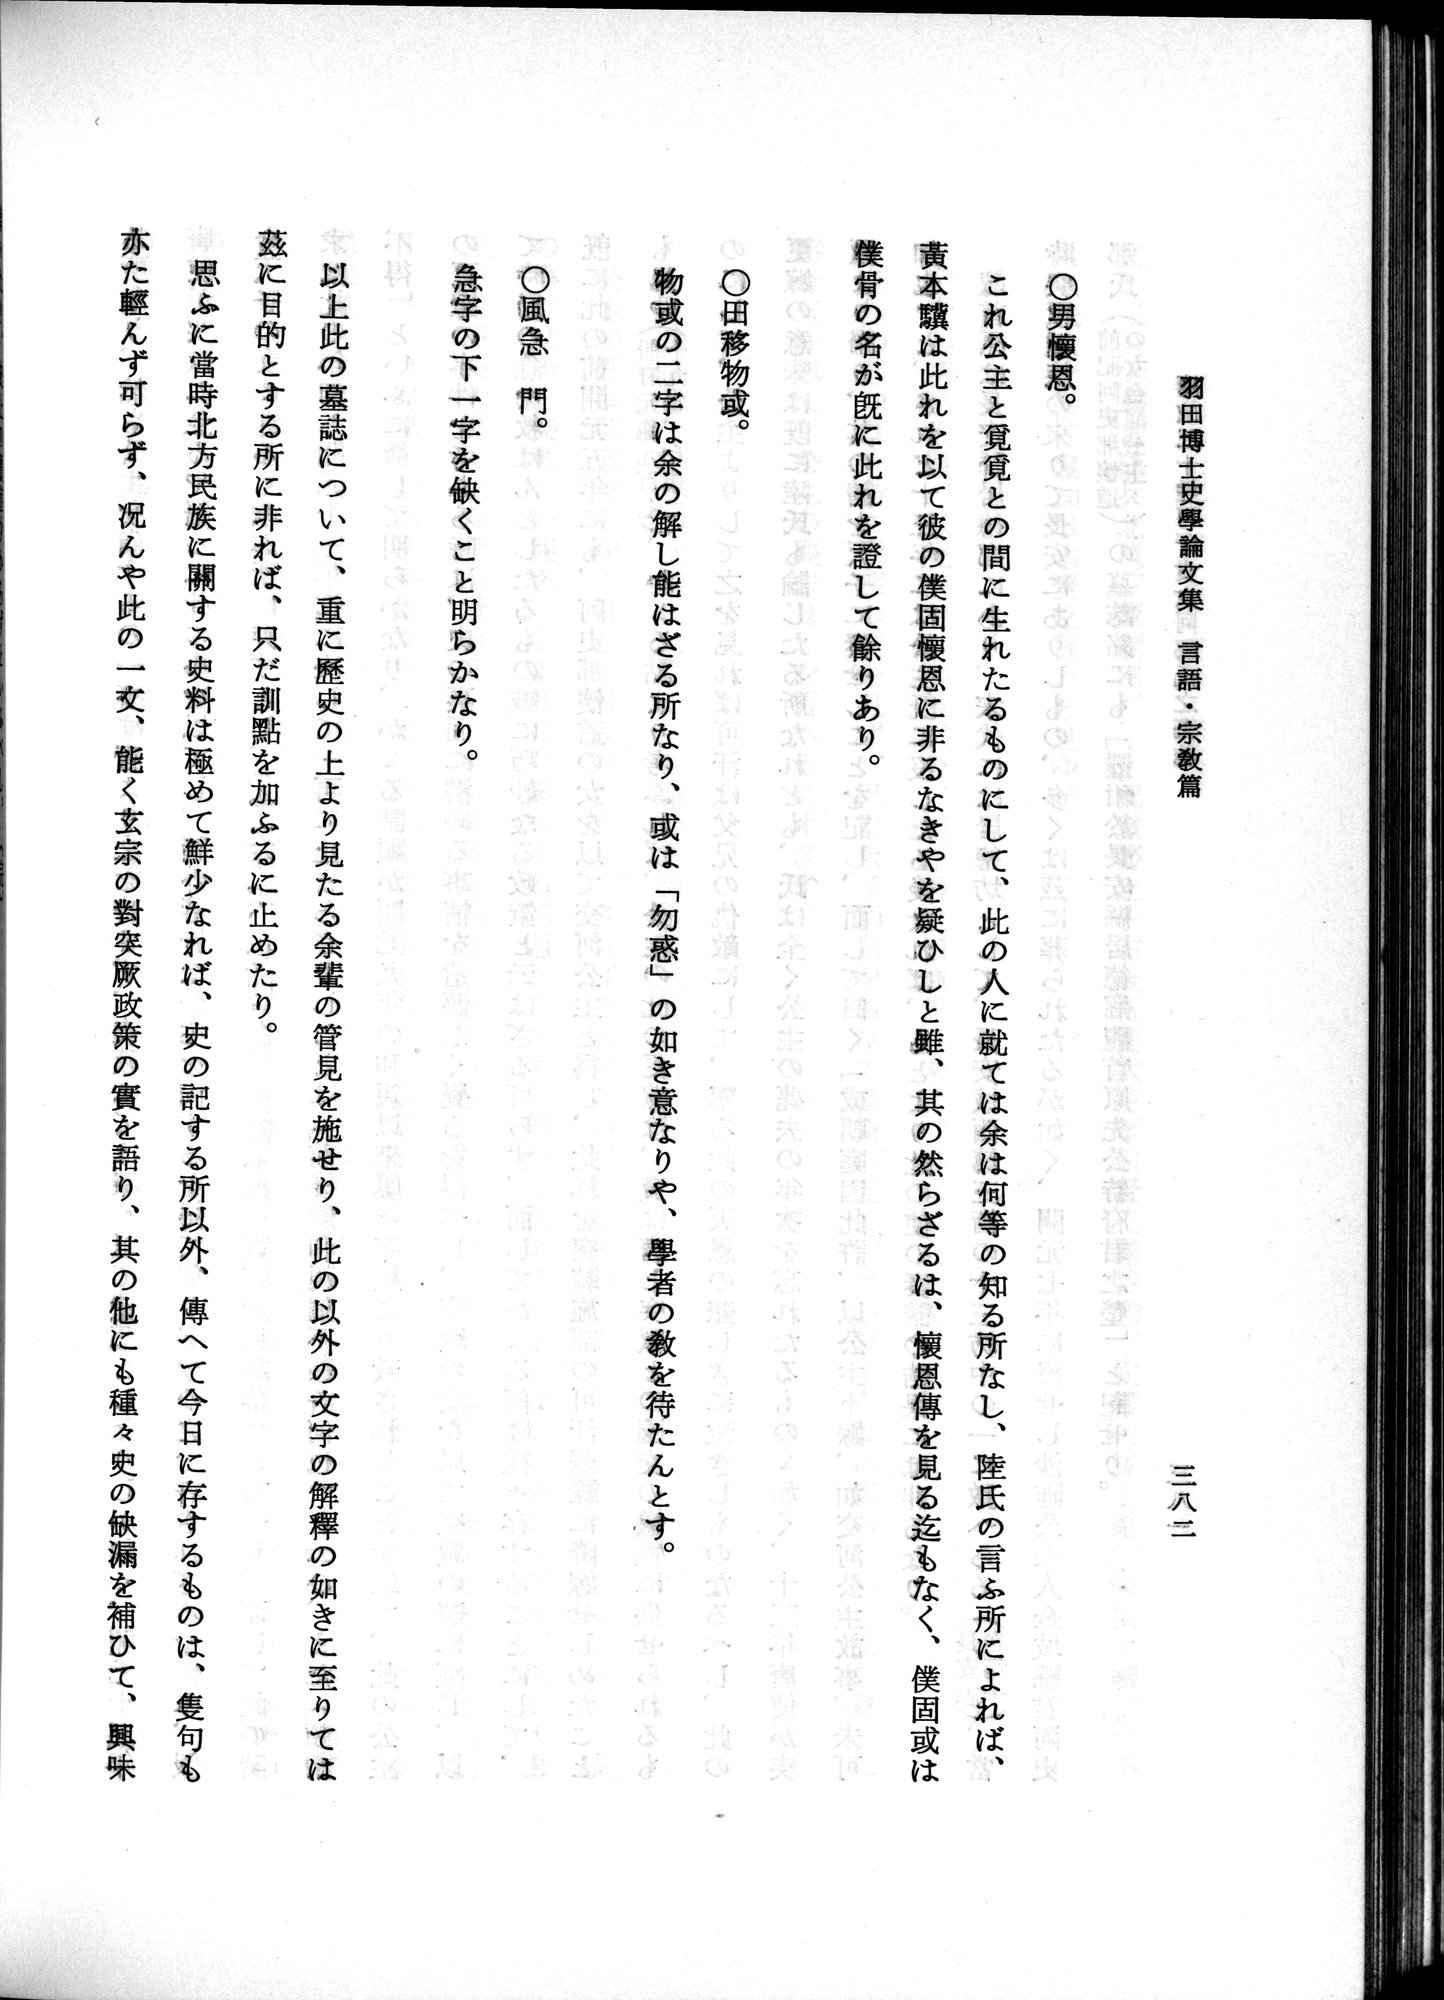 羽田博士史学論文集 : vol.2 / Page 444 (Grayscale High Resolution Image)